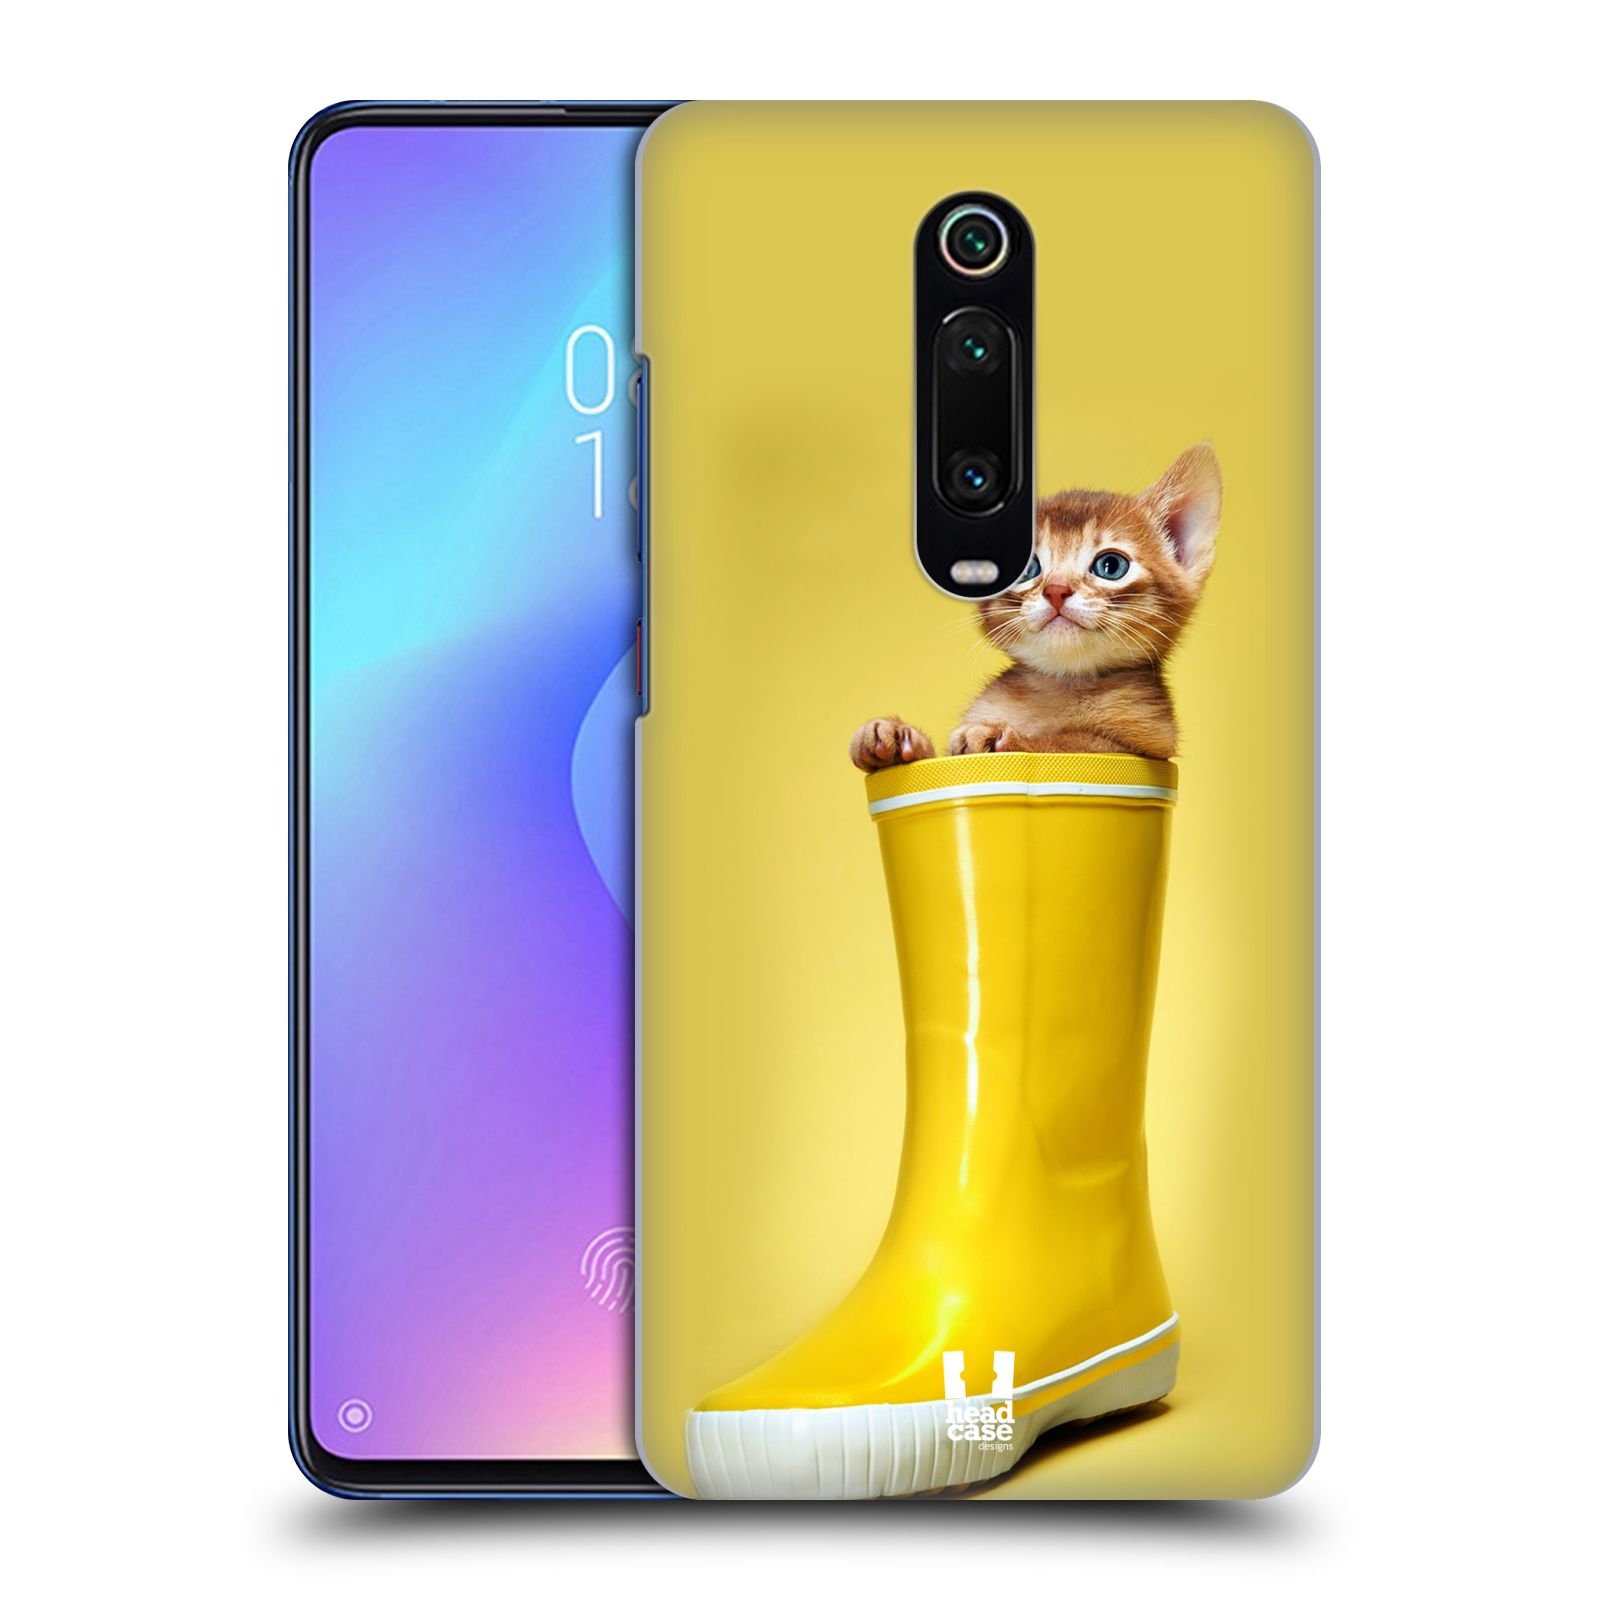 Plastový obal HEAD CASE na mobil Xiaomi Mi 9T vzor Legrační zvířátka kotě v botě žlutá